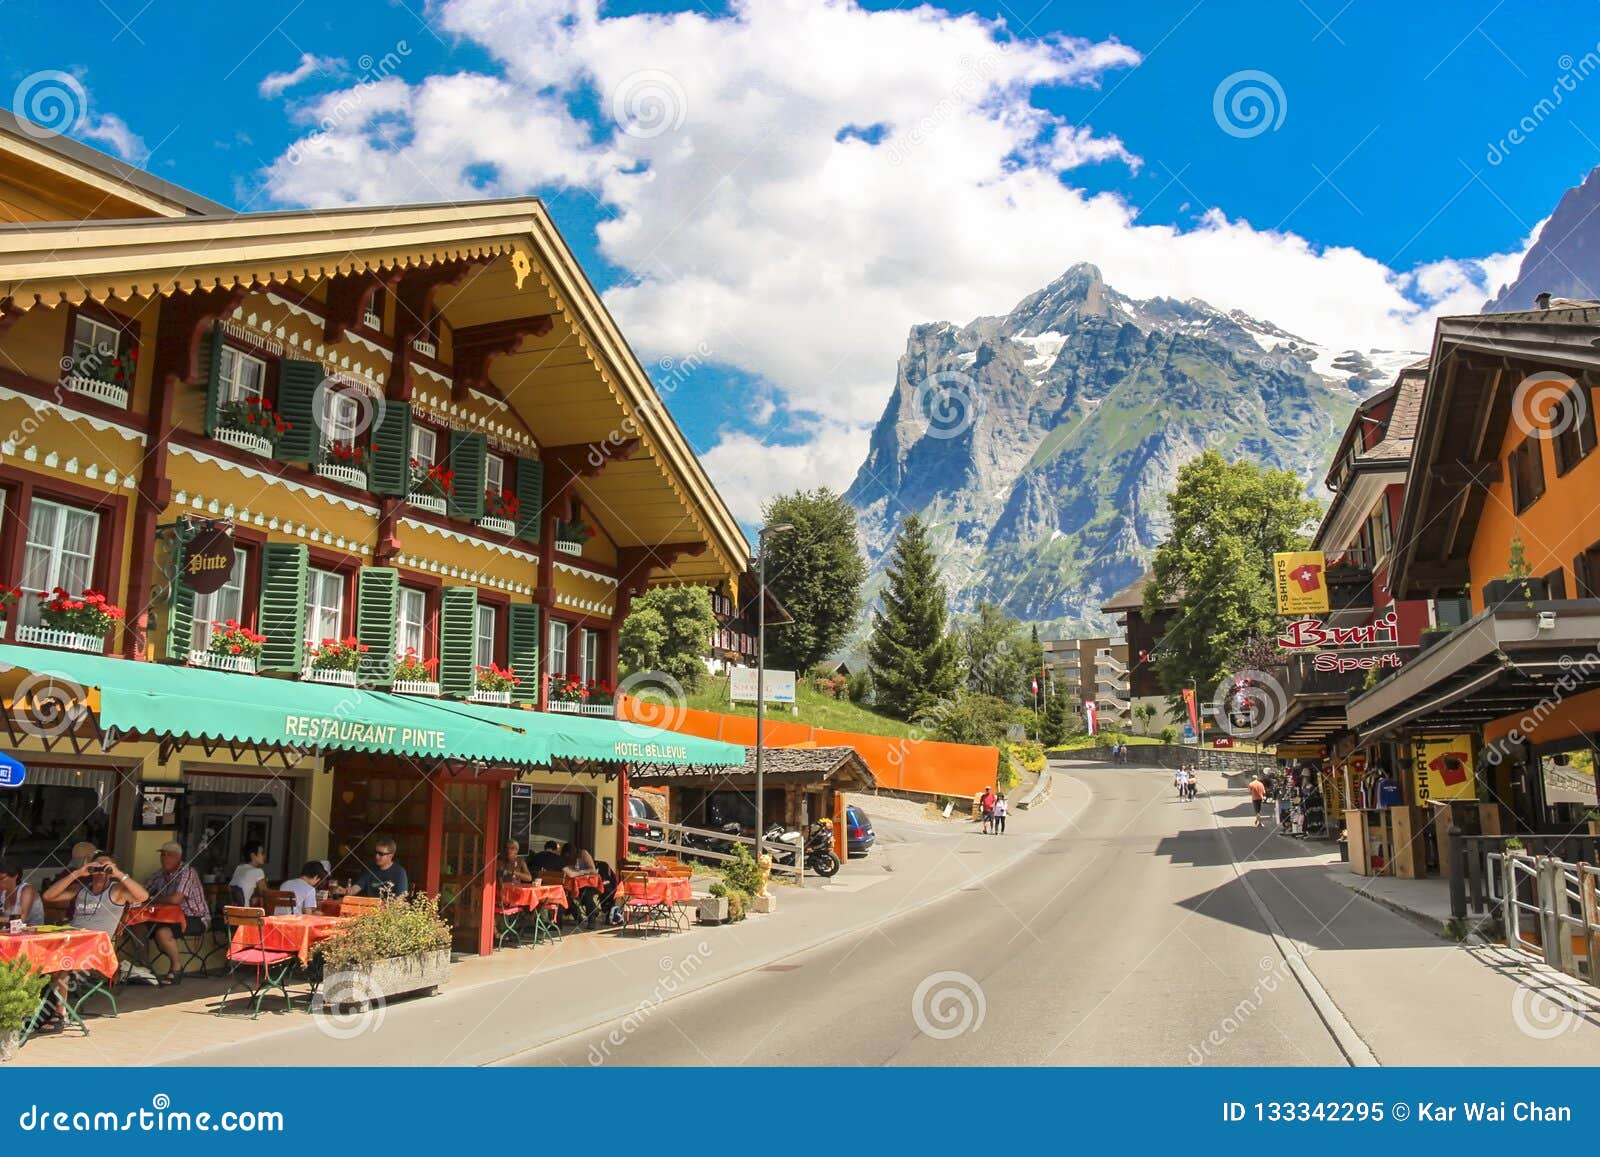 阿尔卑斯山脚下的瑞士小镇 格林德瓦Grindel… - 堆糖，美图壁纸兴趣社区